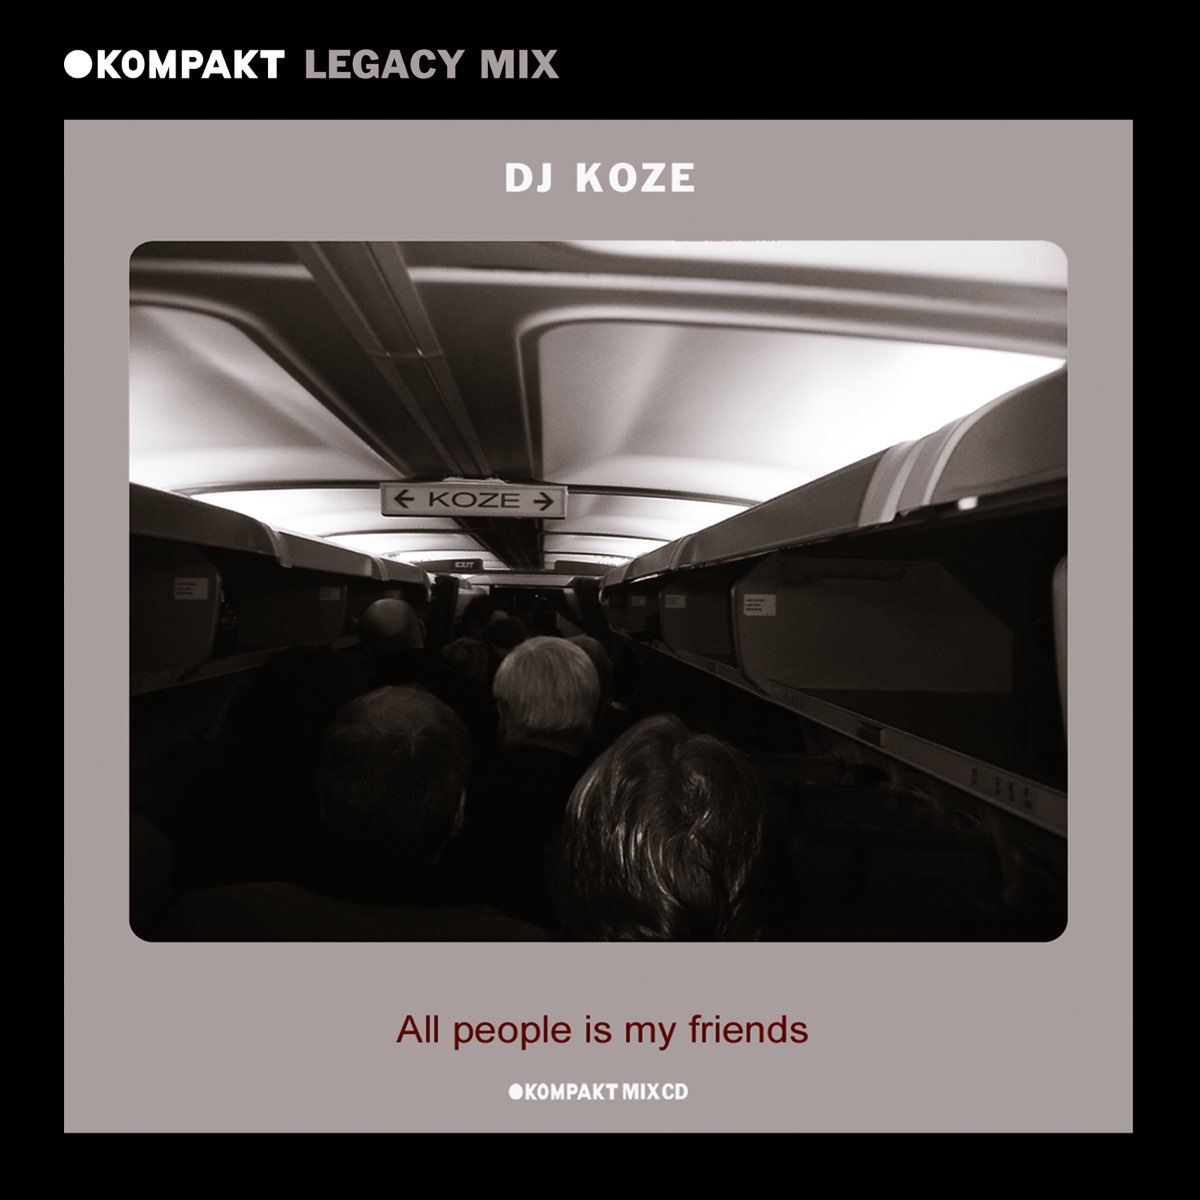 KOMPAKT Legacy Mix: All People Is My Friends, Dj Koze (DJ Mix) by DJ Koze  on Apple Music